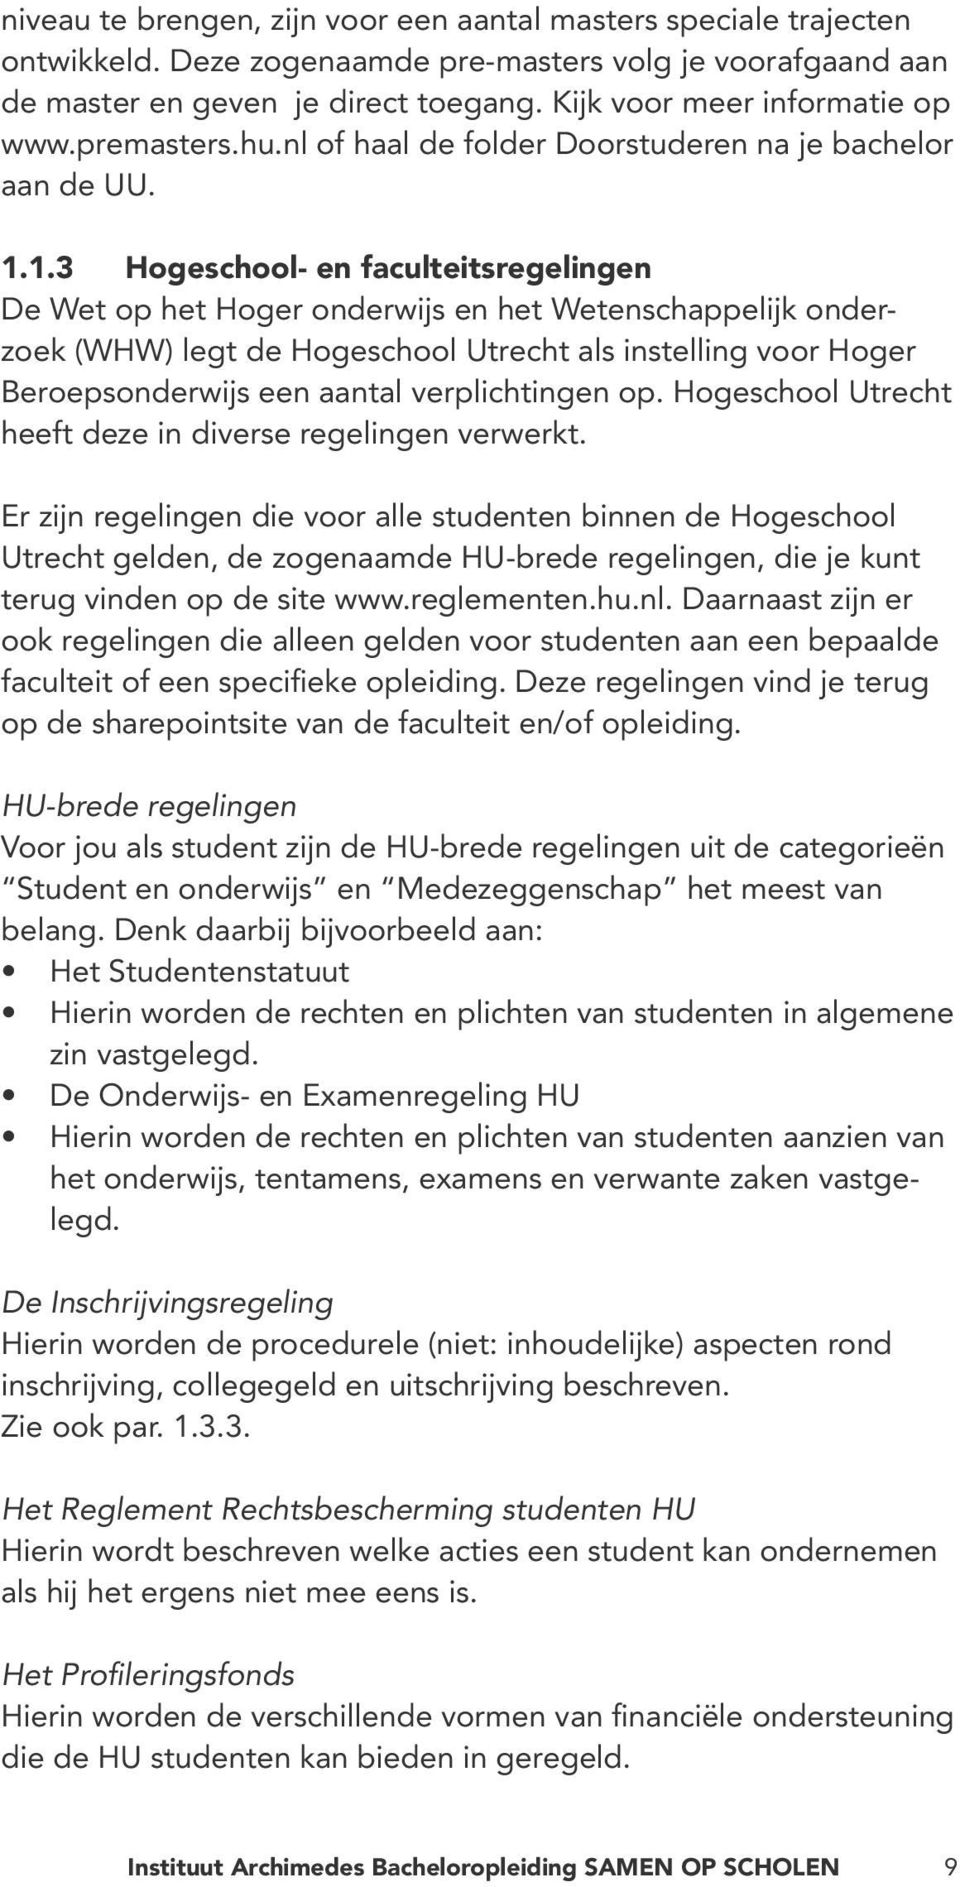 1.3 Hogeschool- en faculteitsregelingen De Wet op het Hoger onderwijs en het Wetenschappelijk onderzoek (WHW) legt de Hogeschool Utrecht als instelling voor Hoger Beroepsonderwijs een aantal